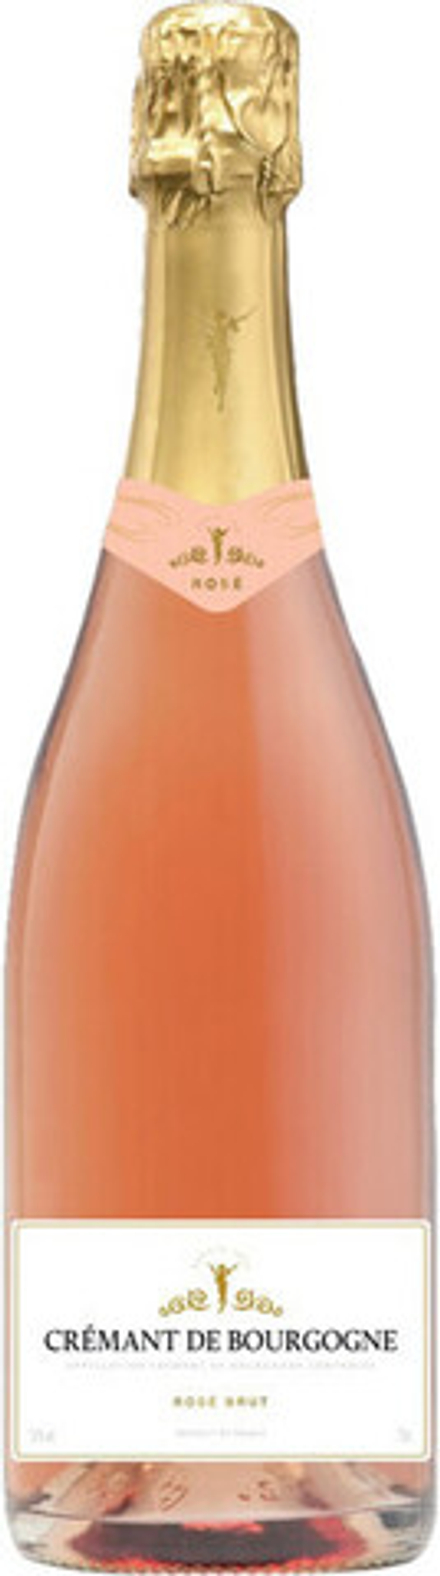 Игристое вино La Chablisienne Cremant de Bourgogne Rose Brut AOC, 0,75 л.